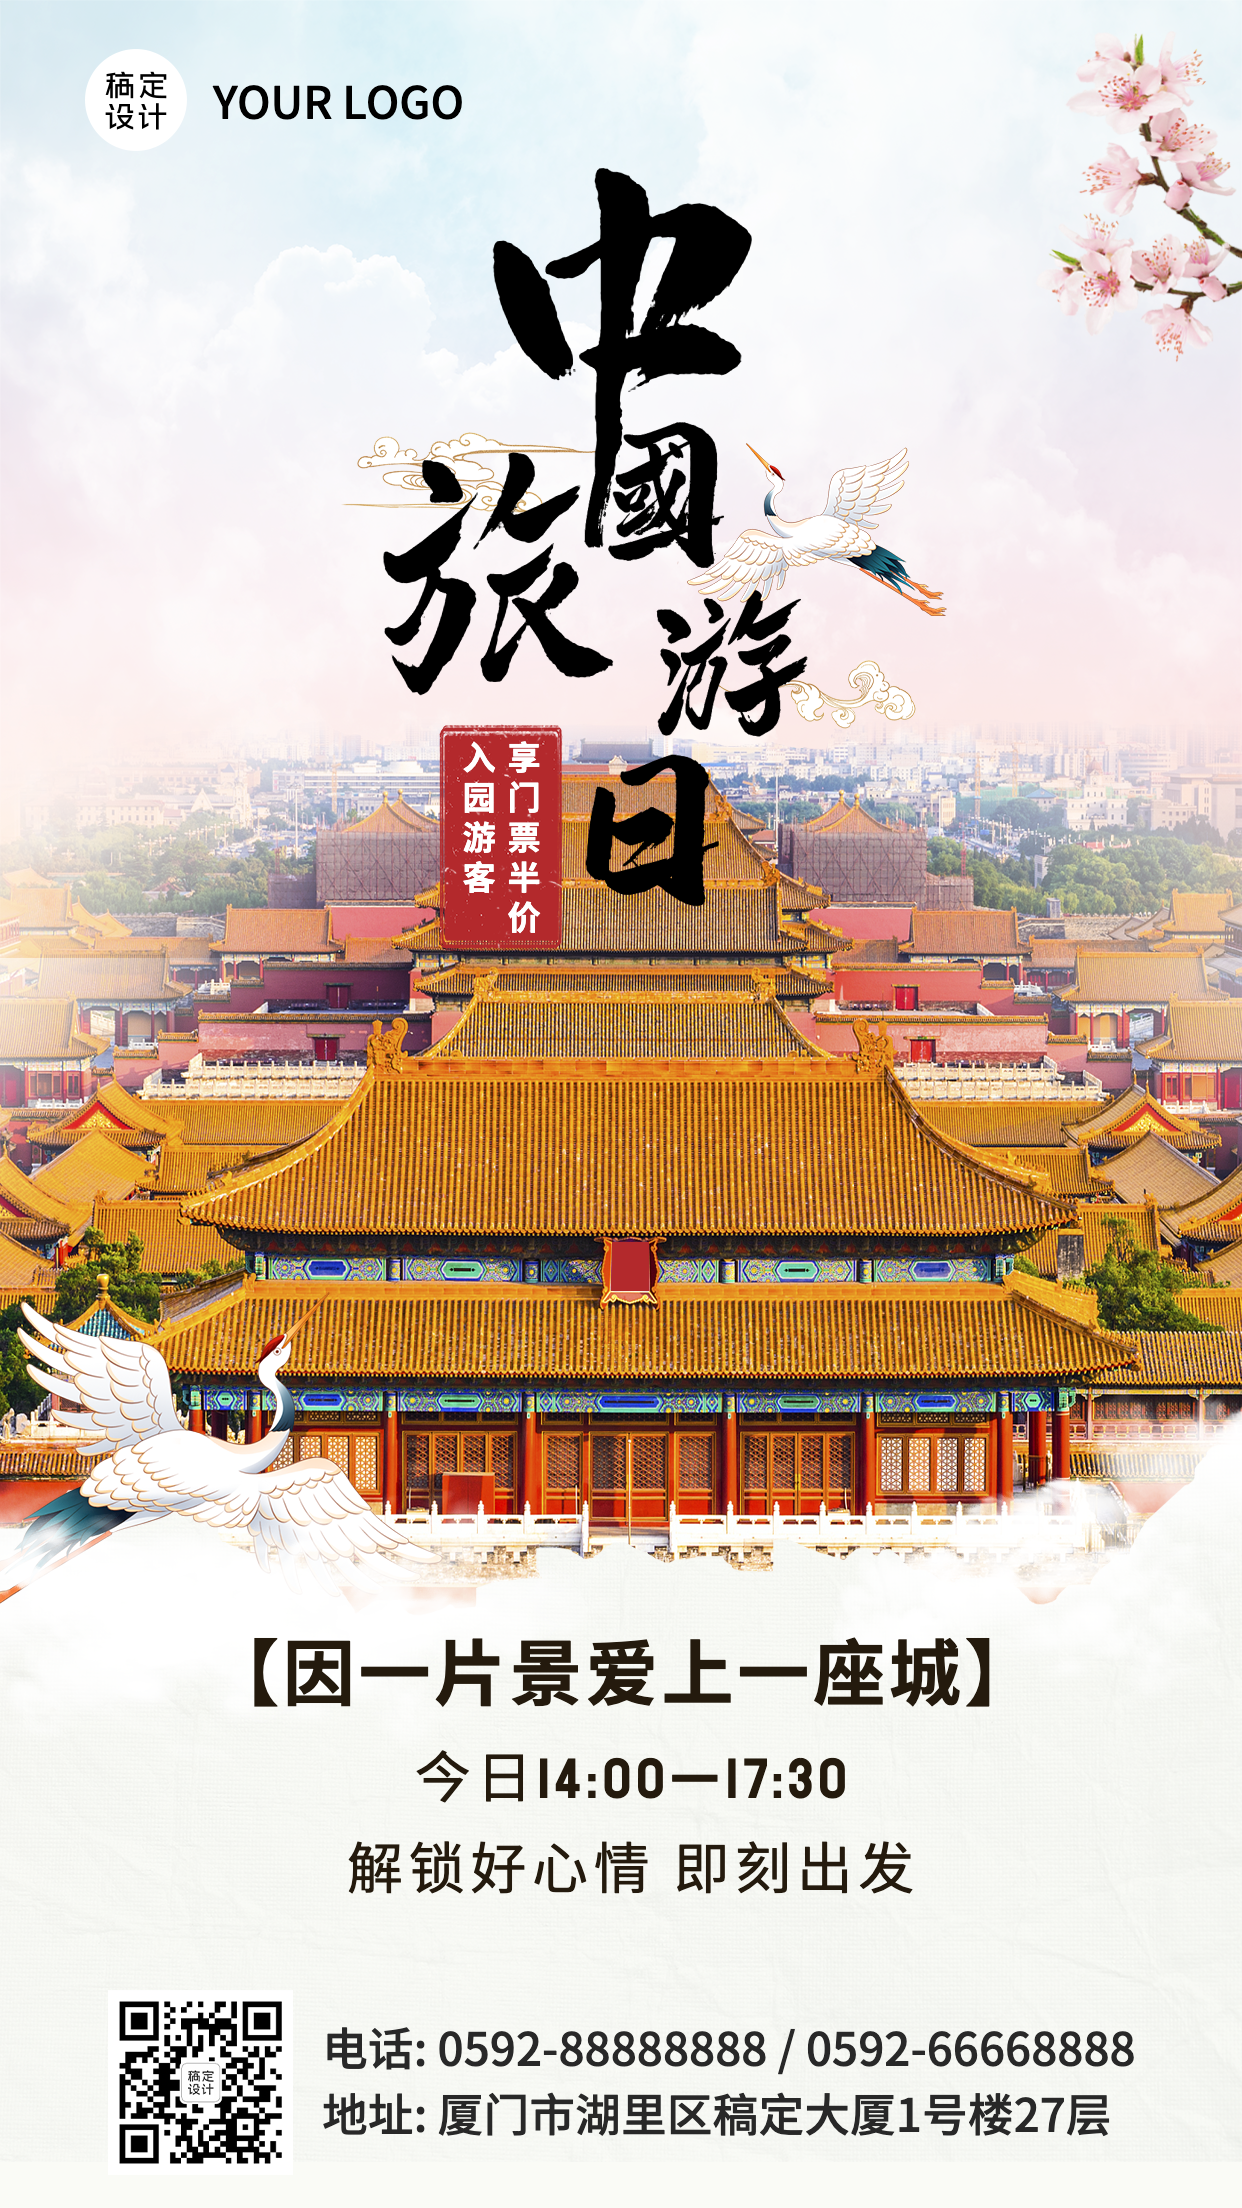 中国旅游日景区宣传促销实景海报预览效果